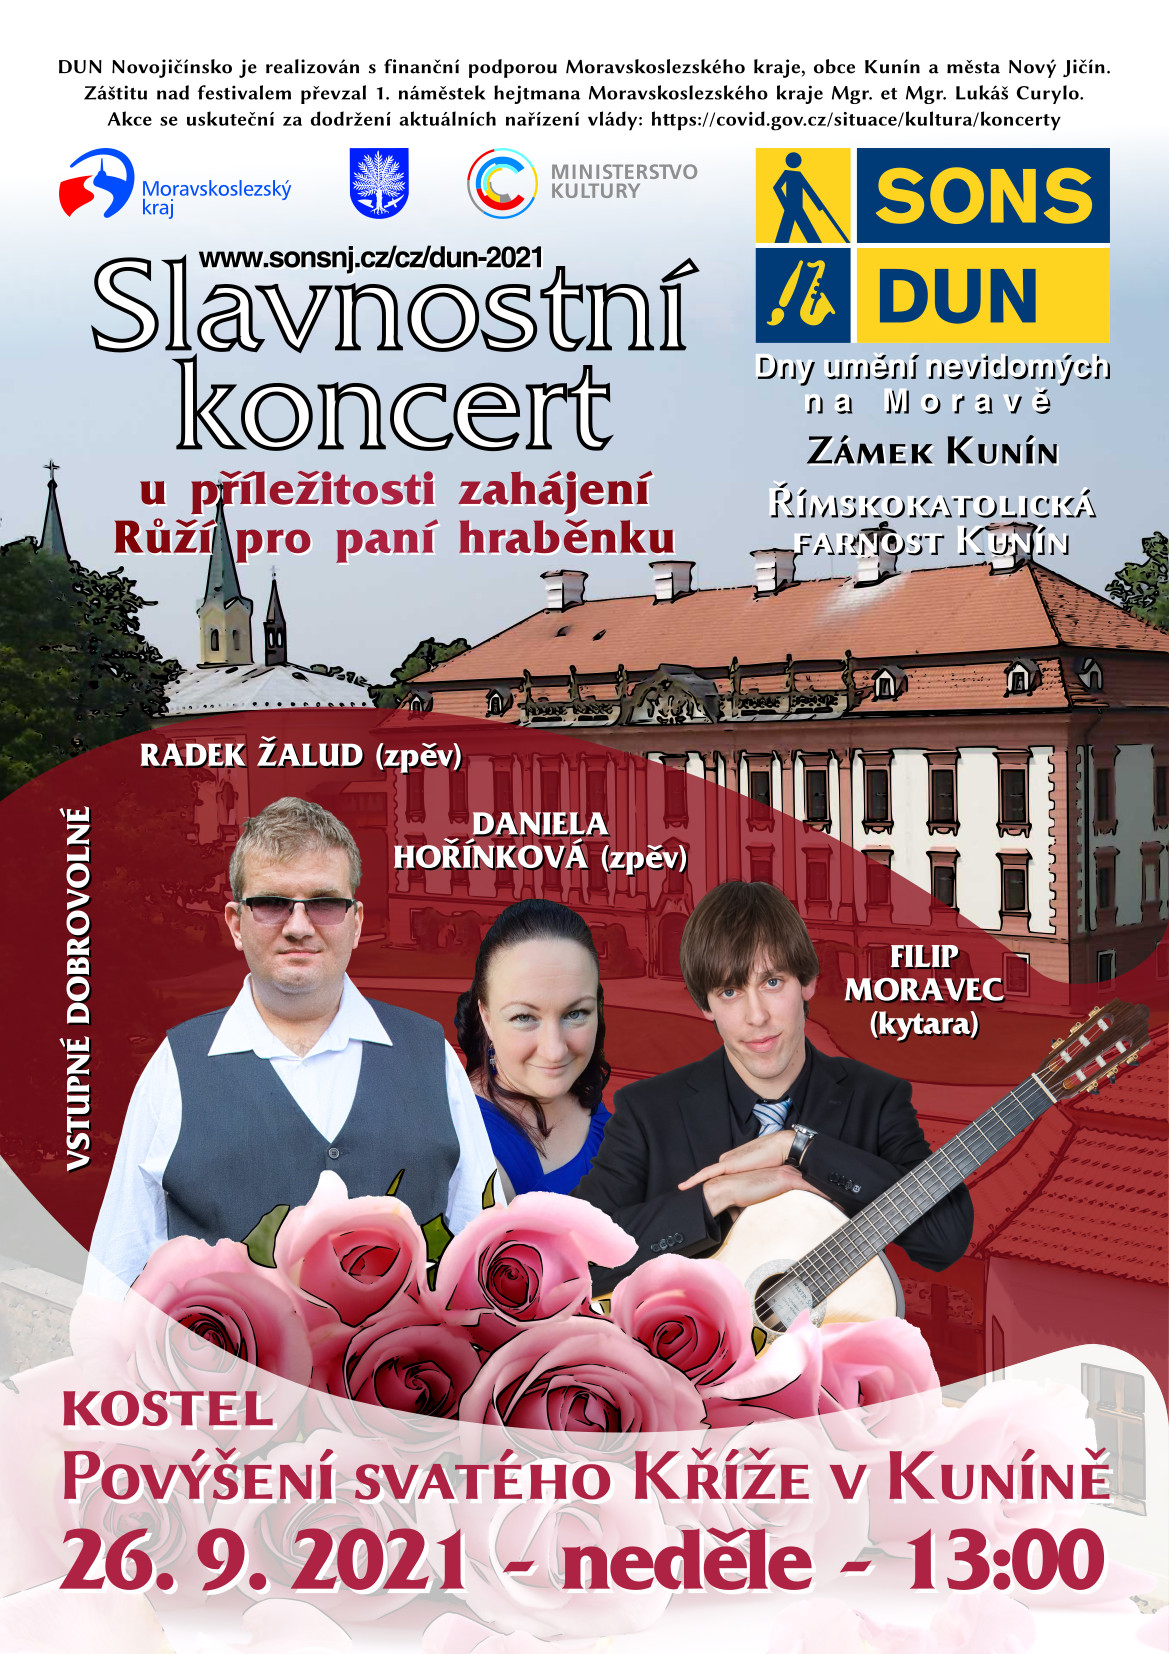 Pozvánka na Slavnostní koncert Daniely Hořínkové a Radka Žaluda v doprovodu Filipa Moravce u příležitosti tradičních Růží pro paní hraběnku Zámku Kunín.